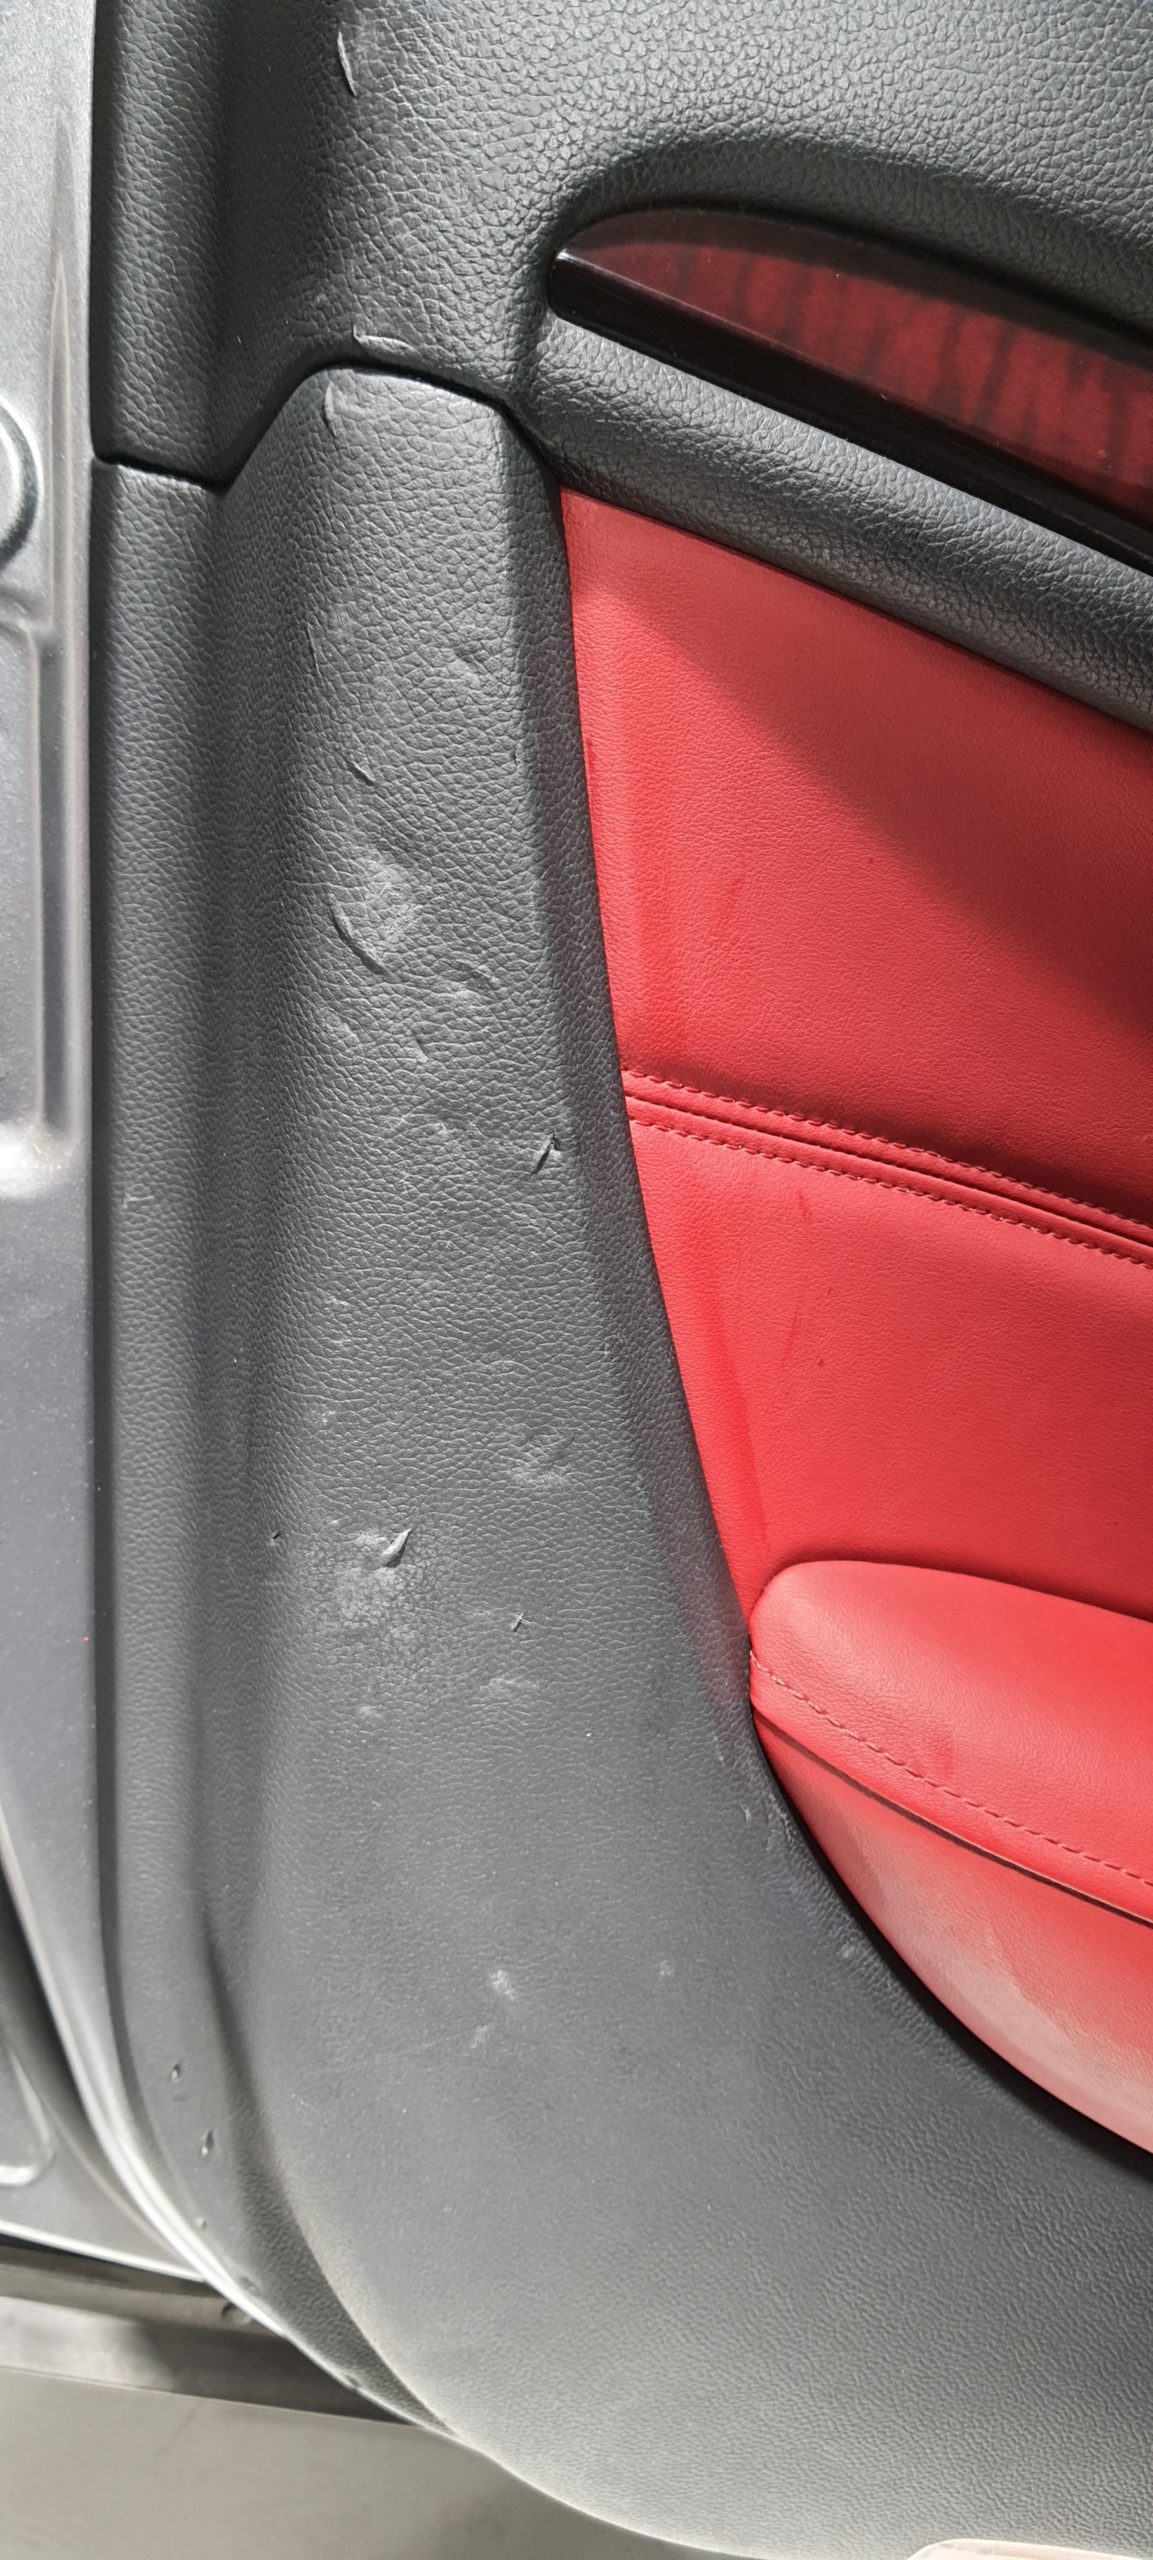 Réparation d'un panneau de porte d'Infinity Q35 Cabriolet, en cause de ces grosses éraflures et déchirements : La boucle de ceinture de sécurité mal enroulée et mal rangée dans son logement